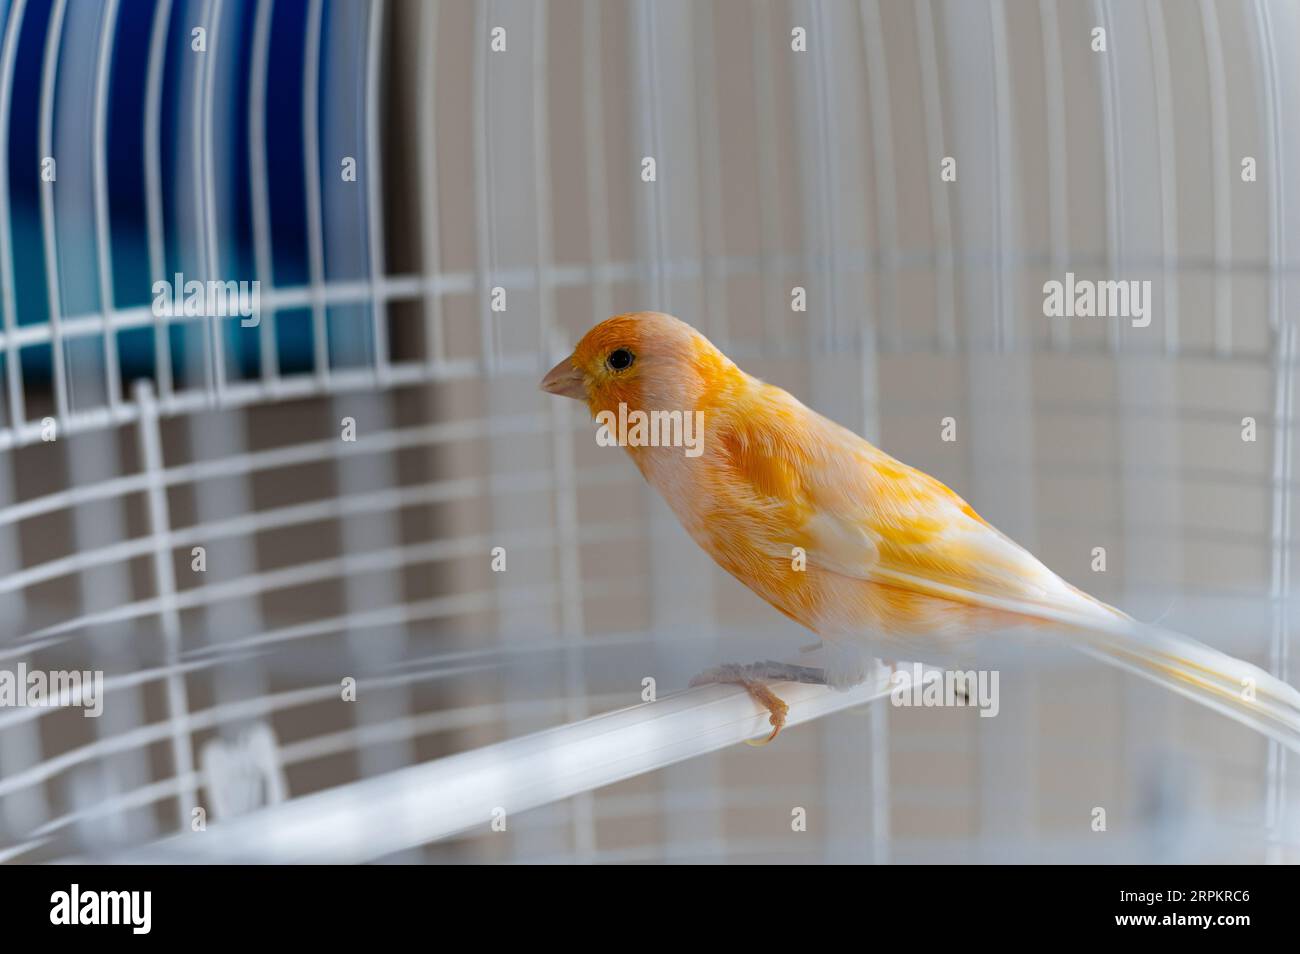 canari jaune dans une cage blanche, gros plan. L'oiseau est assis sur un perchoir dans une cage blanche, à l'intérieur. Banque D'Images